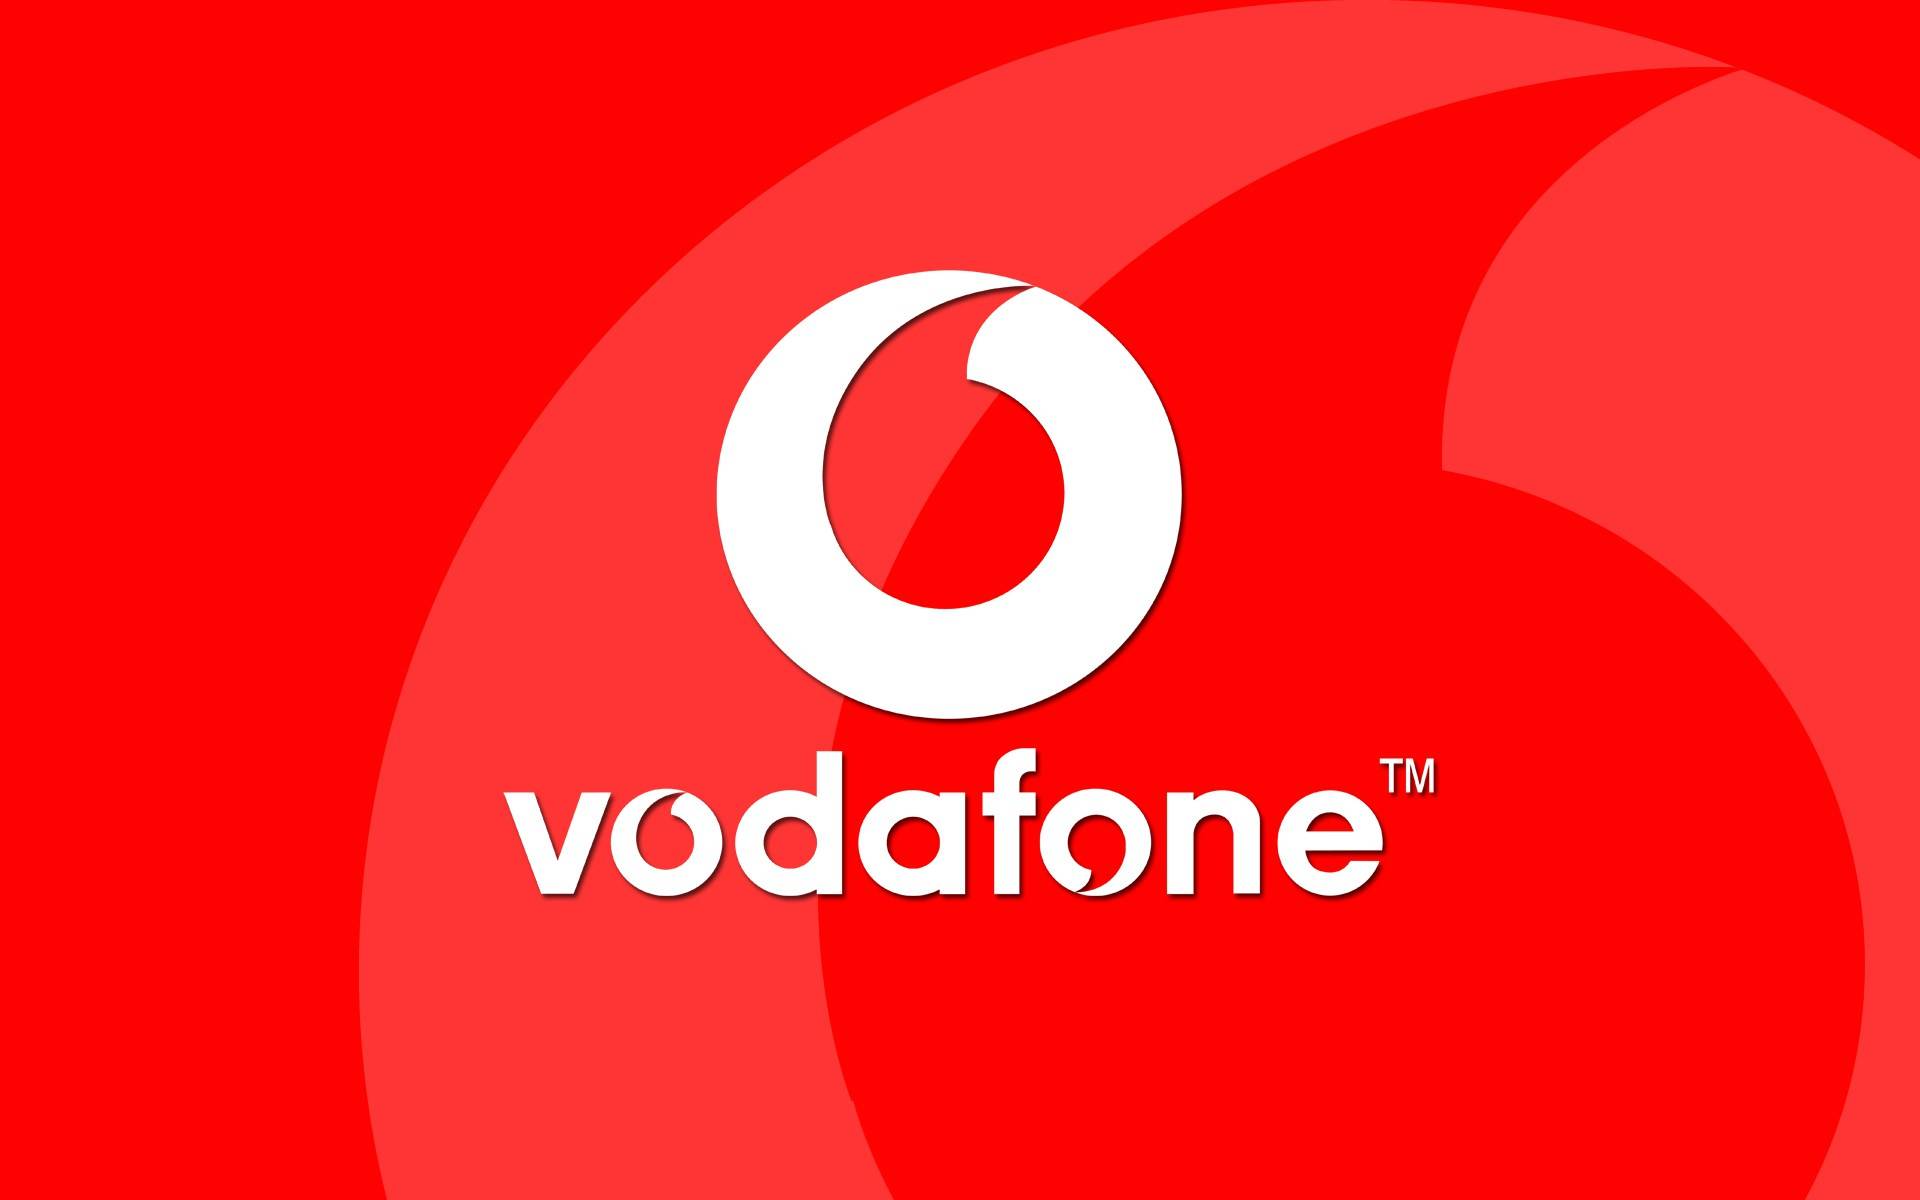 Vodafone. 2 september met smartphones waarvan de prijzen VEEL verlaagd zijn